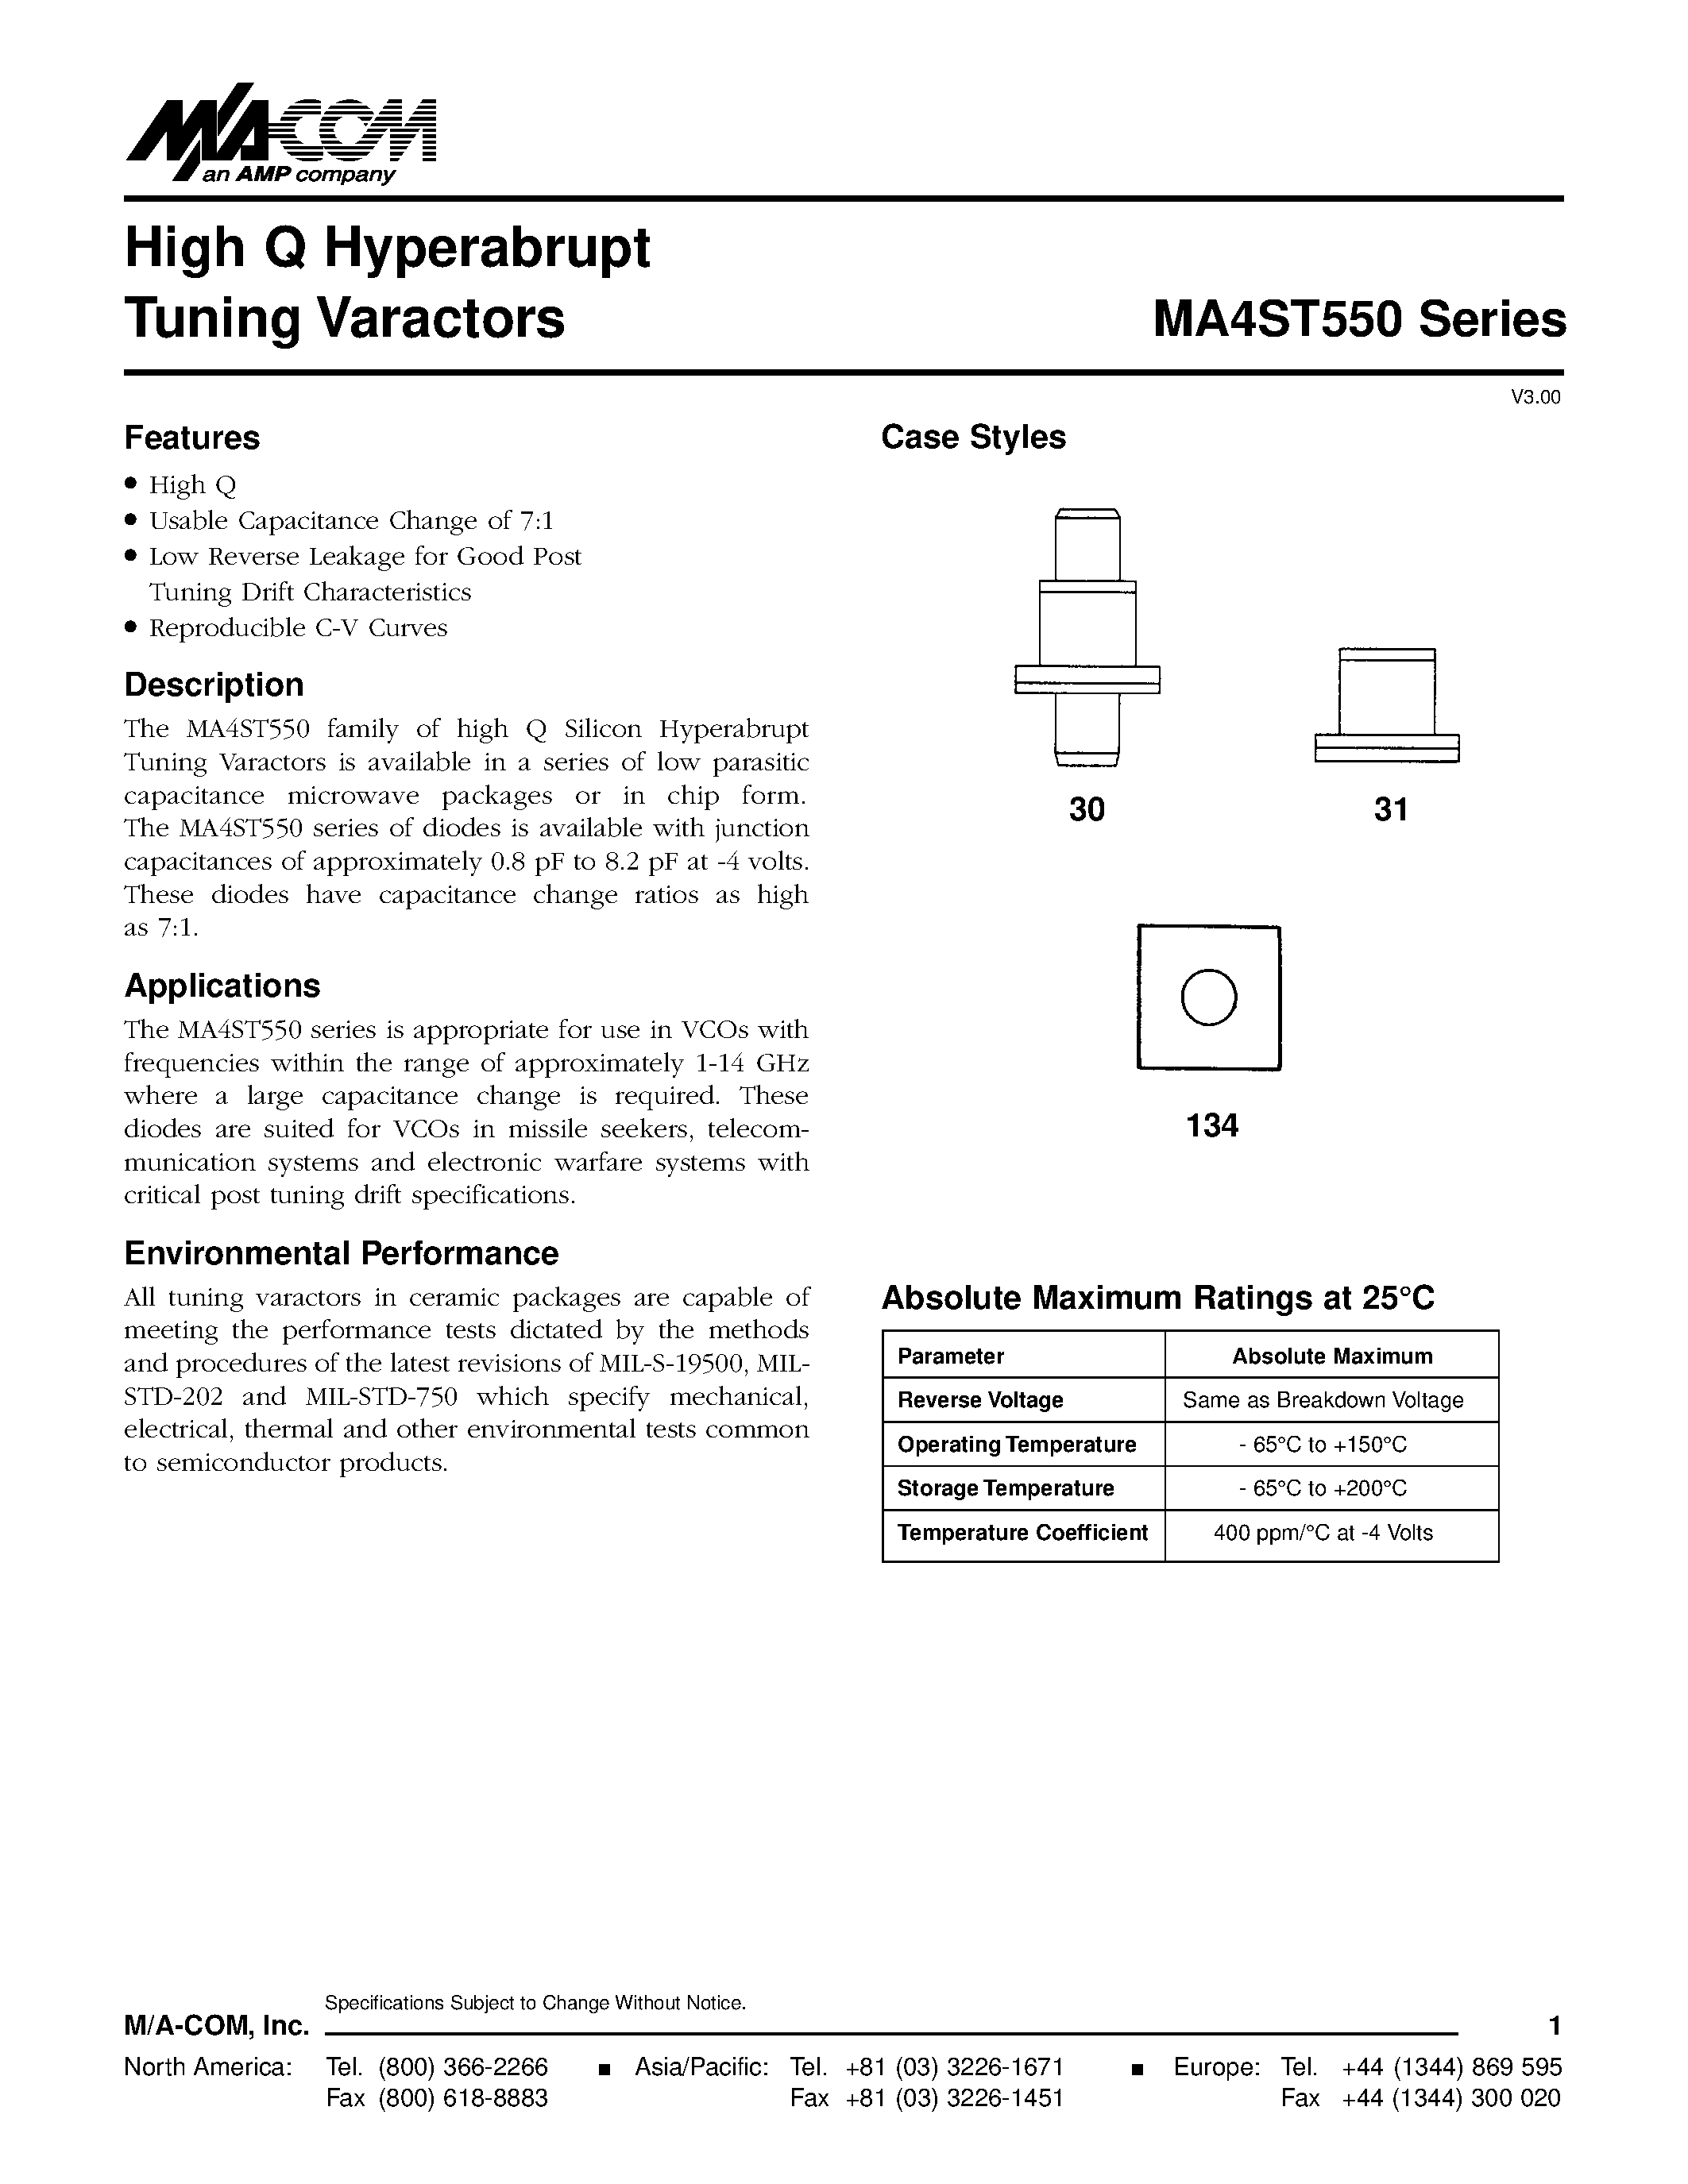 Даташит MA4ST556 - High Q Hyperabrupt Tuning Varactors страница 1